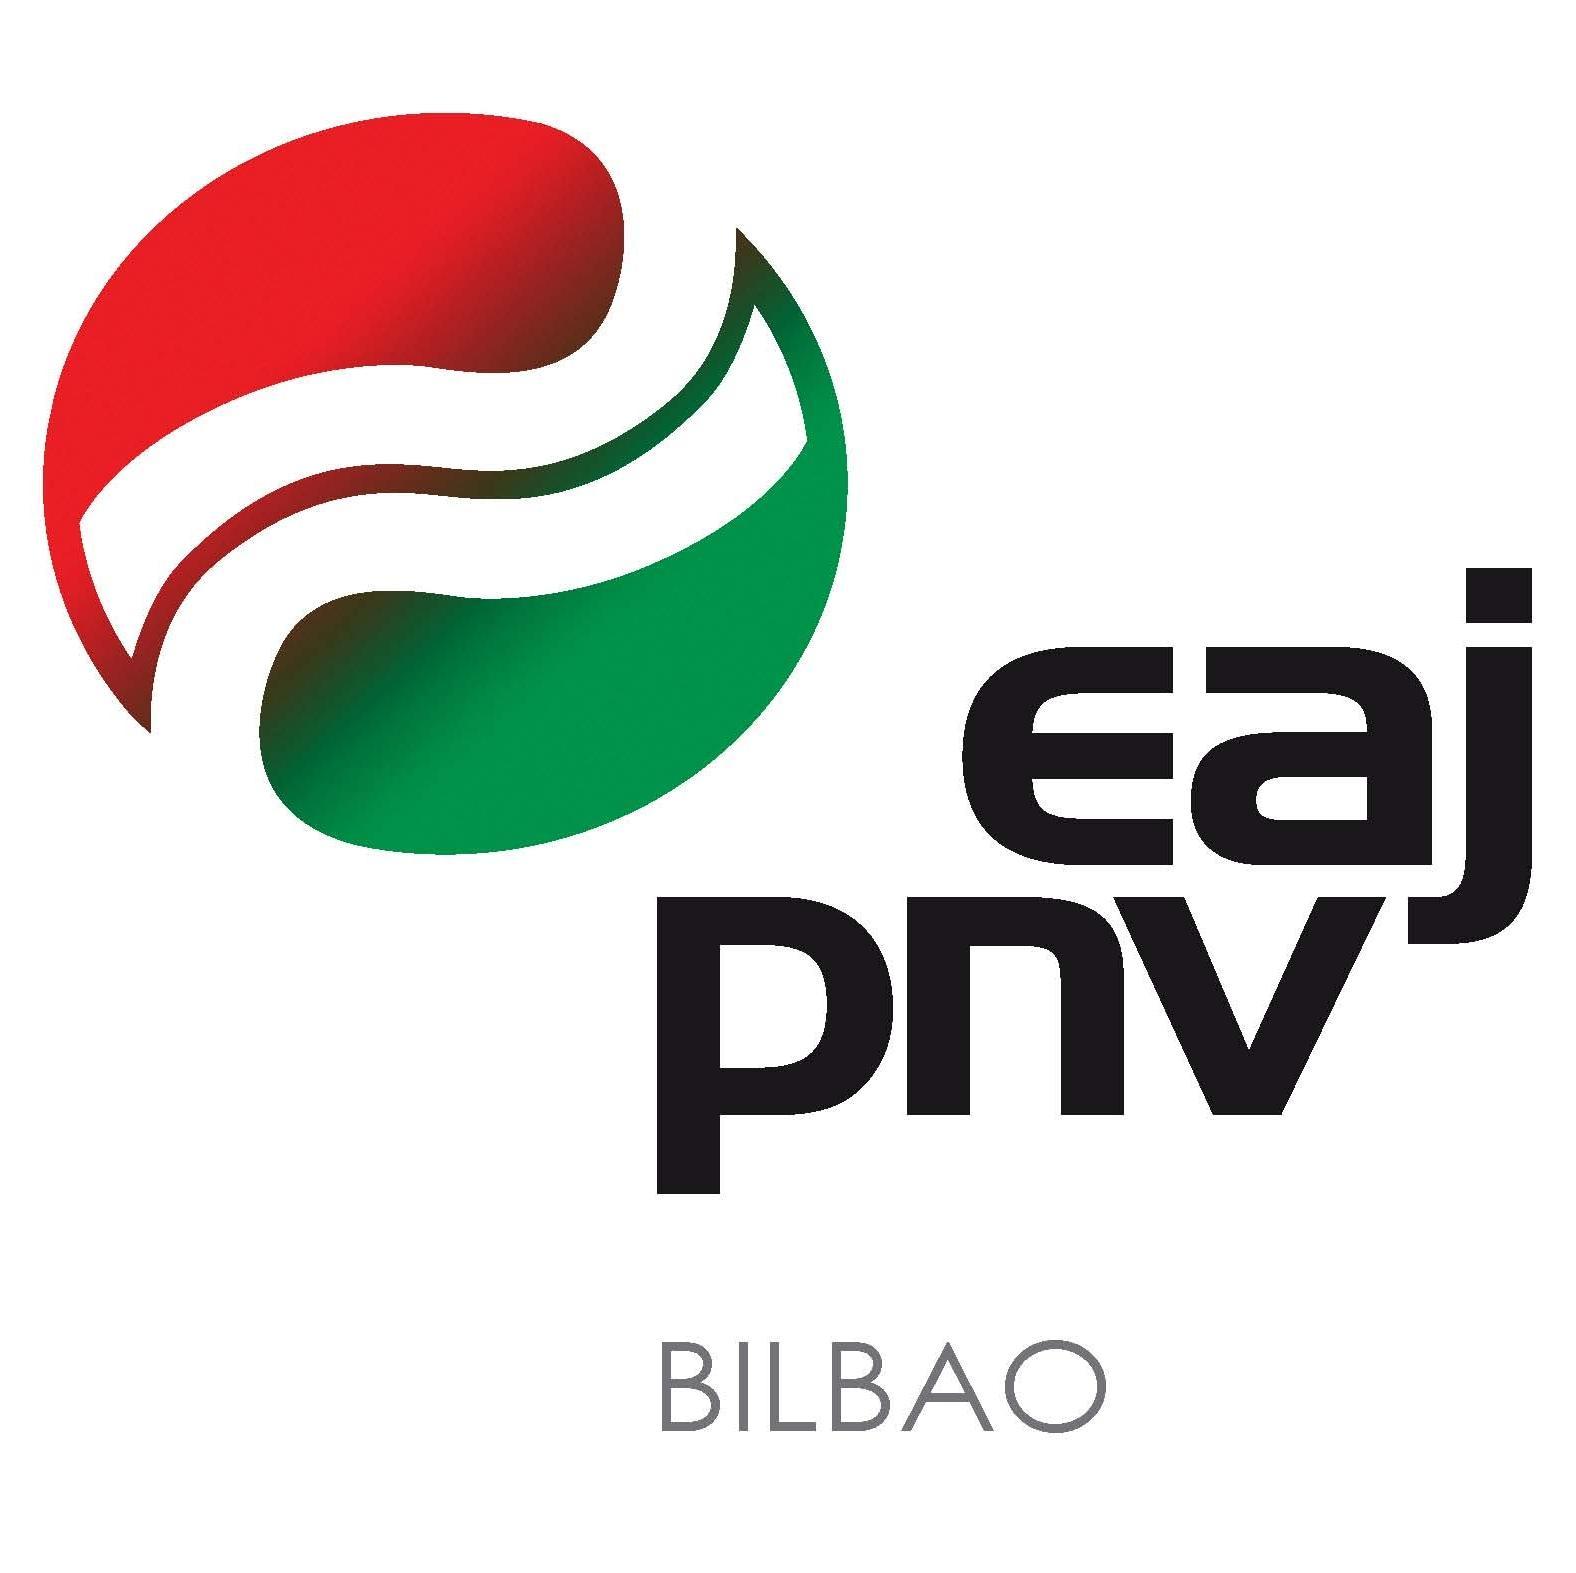 Bilboko Euzko Alderdi Jeltzaleari buruzko orrialde ofiziala Twitterren // Página oficial de @eajpnv Bilbao en Twitter